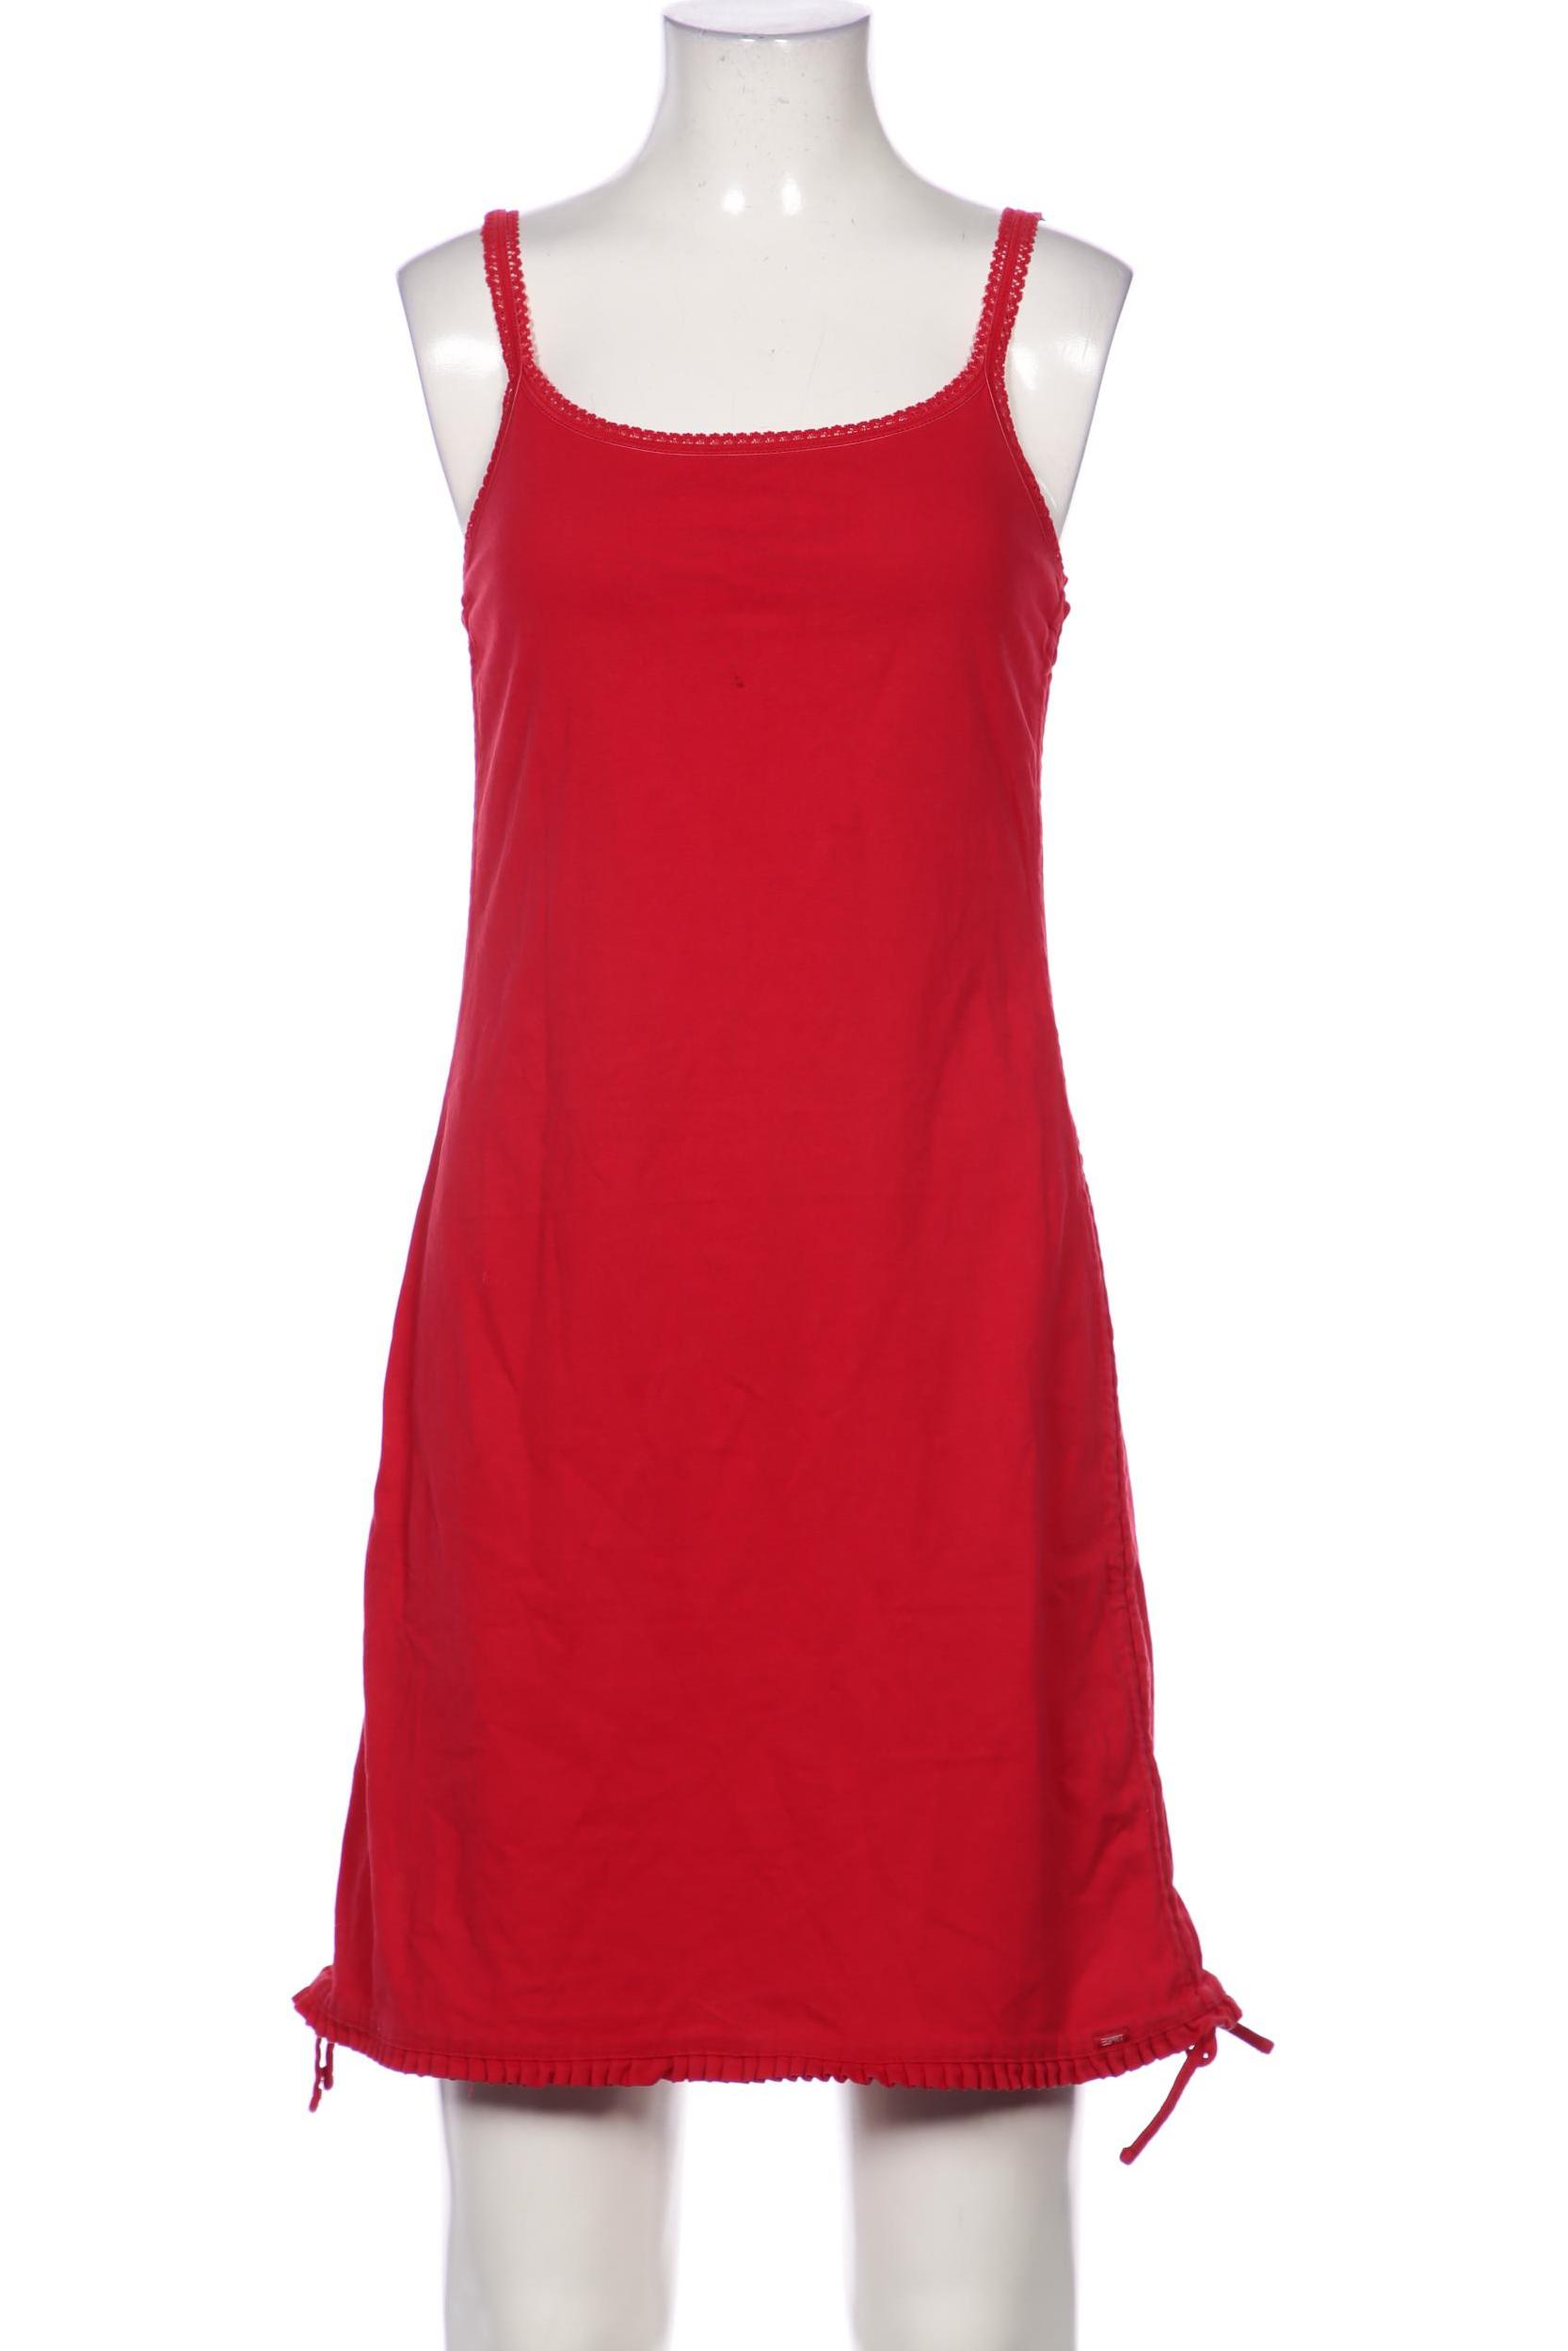 Esprit Damen Kleid, rot, Gr. 36 von Esprit